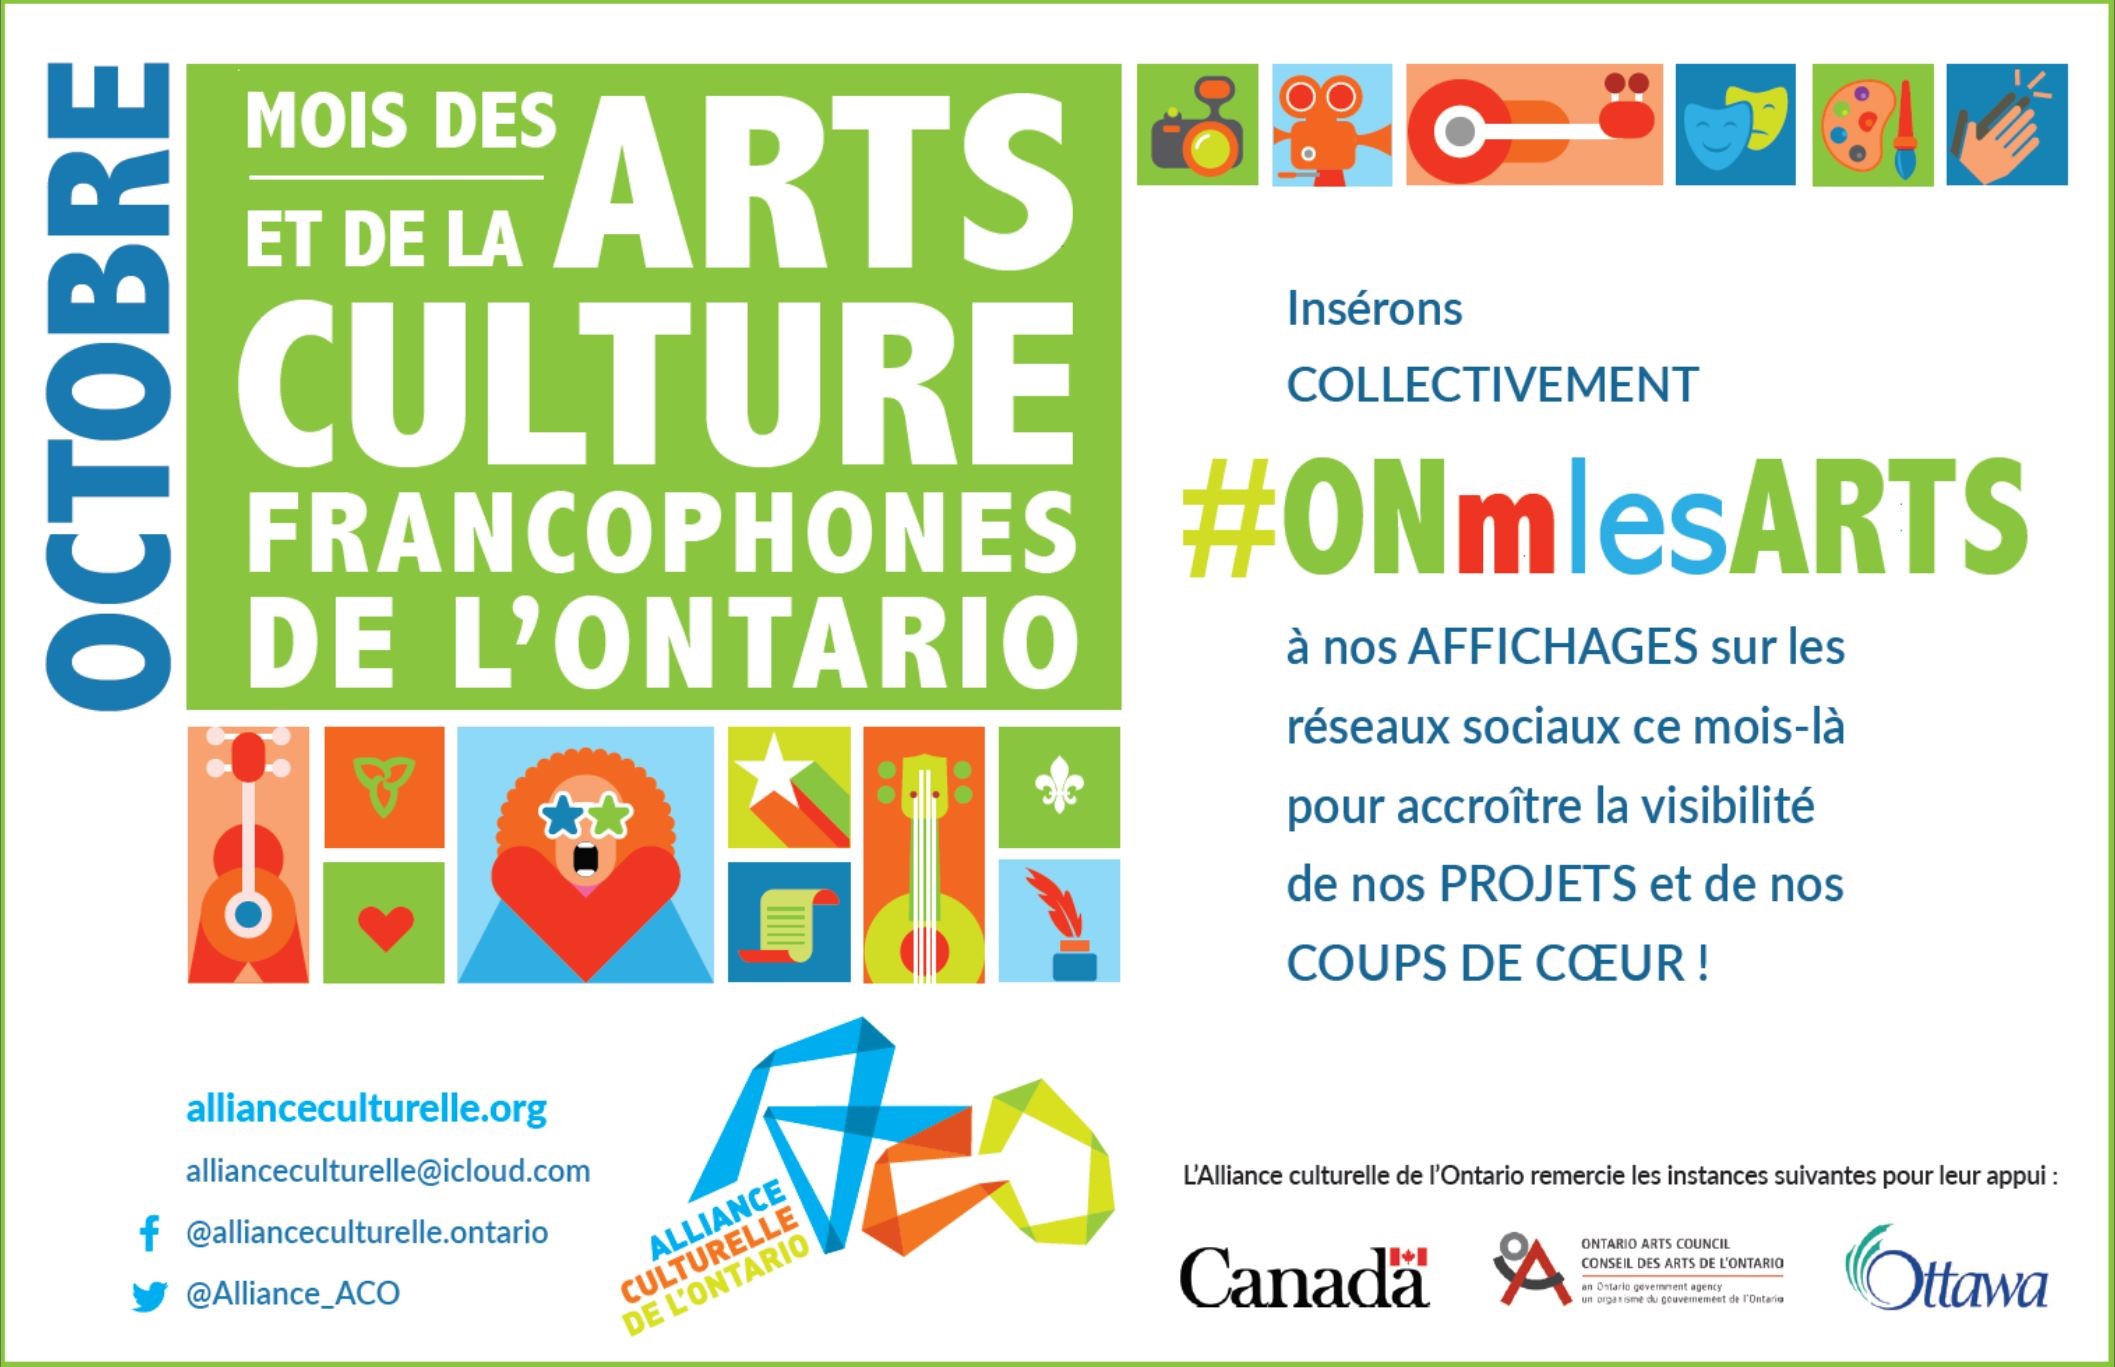 mois des arts et de la culture francophone